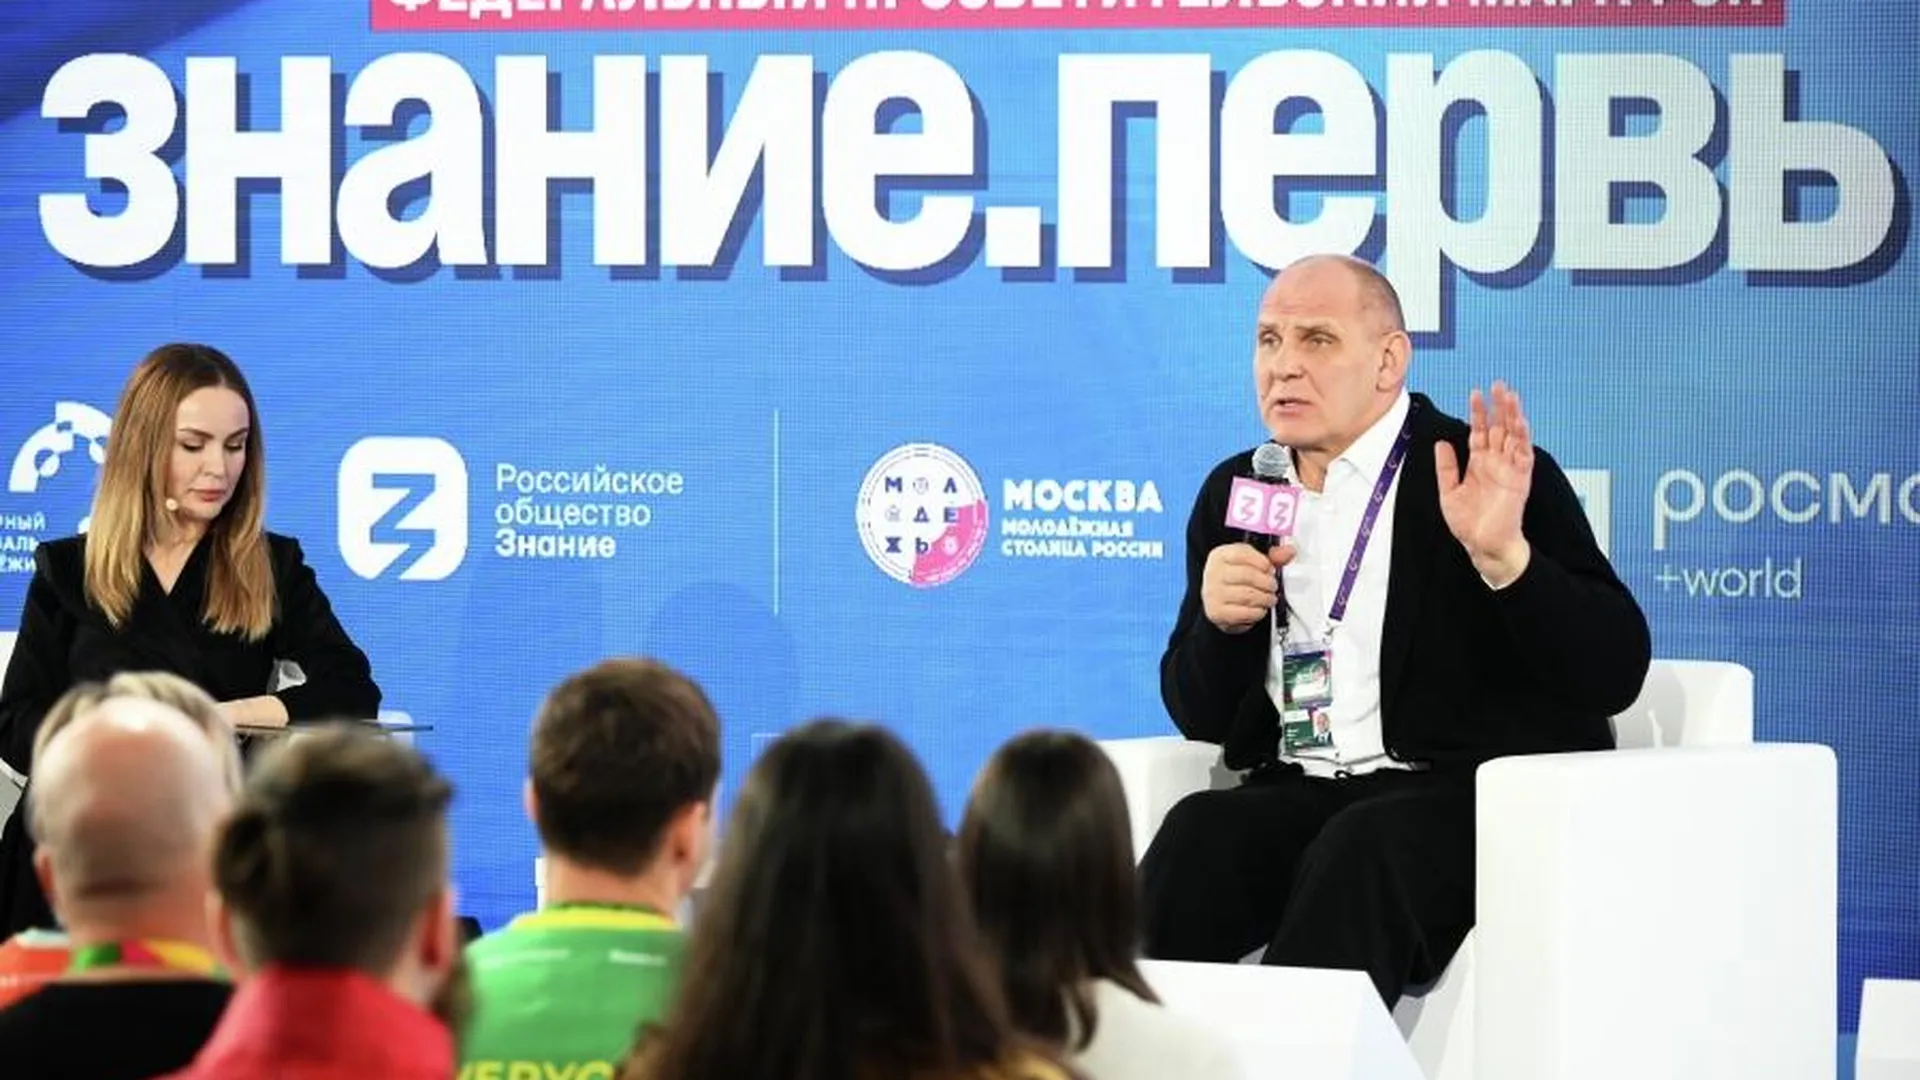 Сенатор РФ Карелин пообщался с участниками марафона «Знание.Первые»